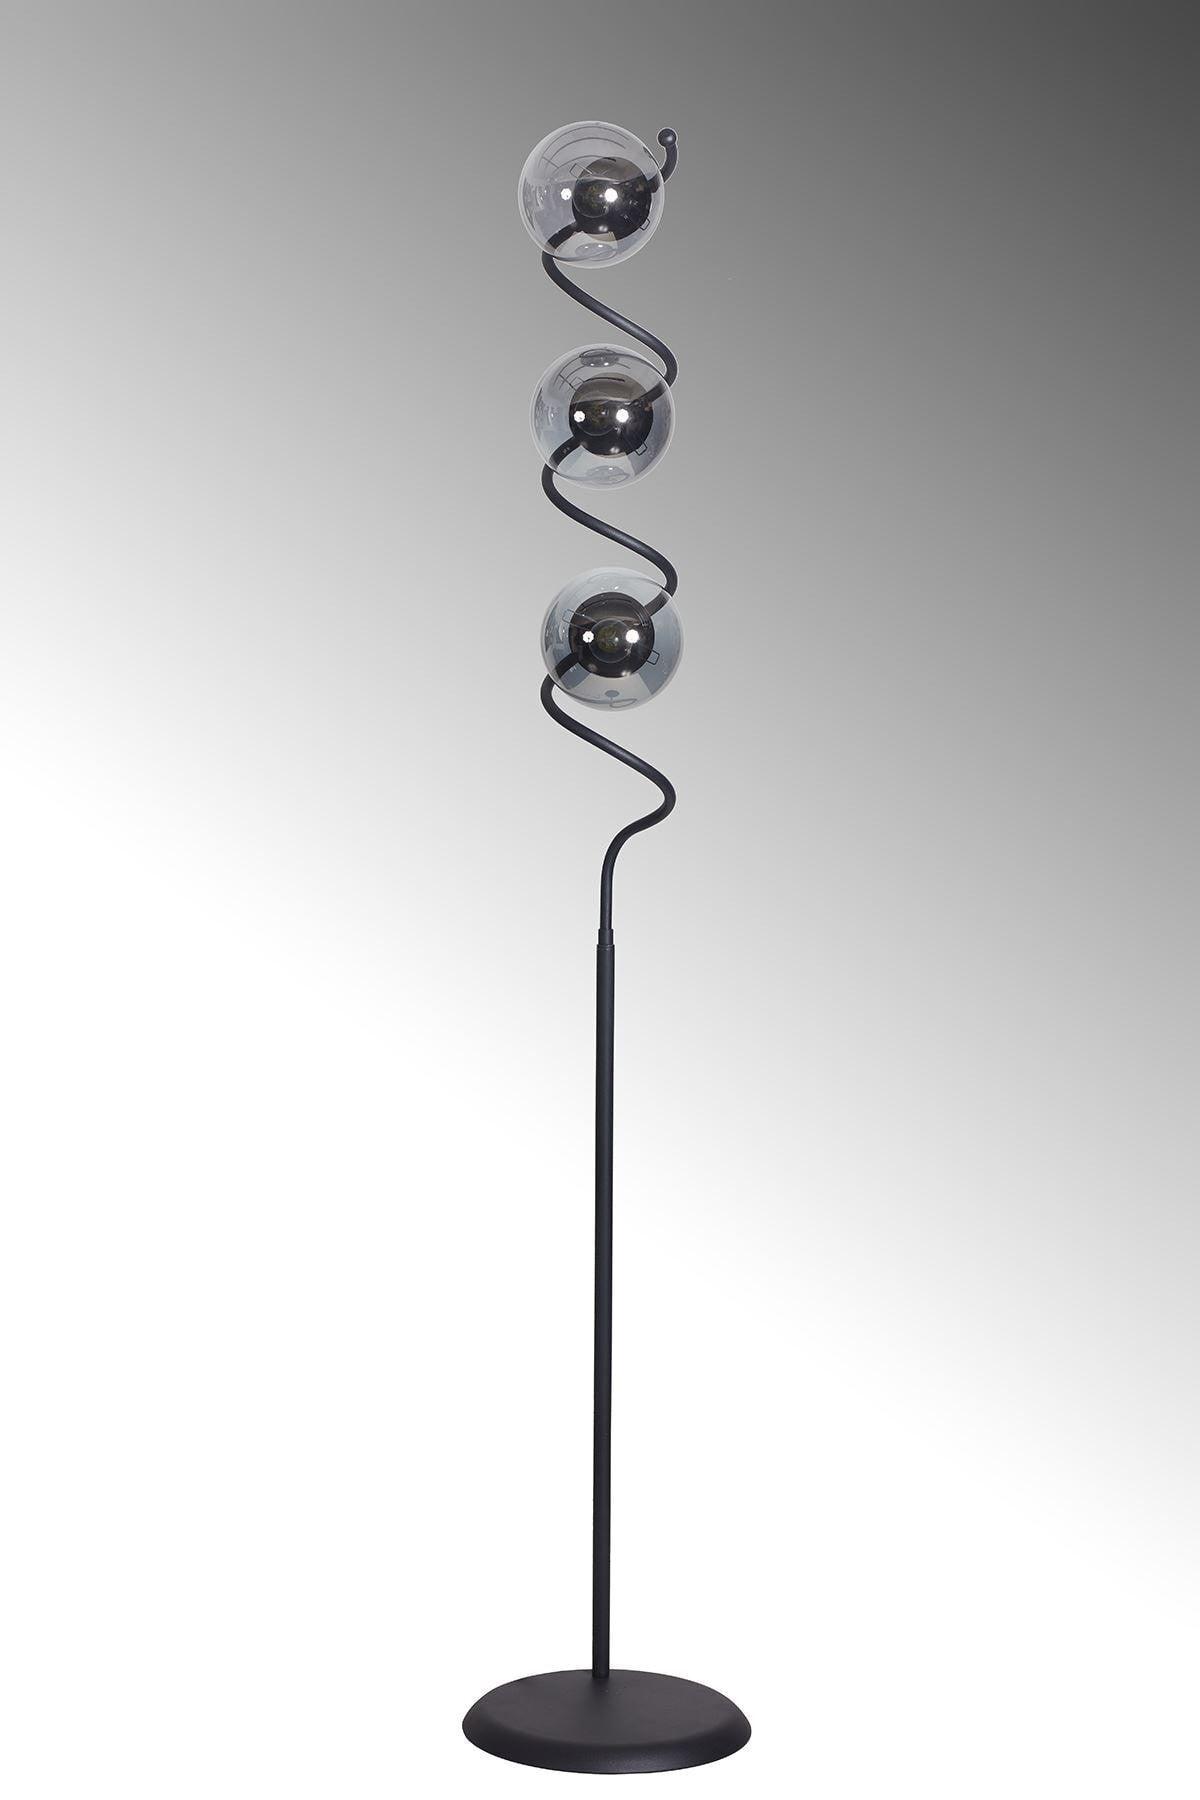 Nora Black Metal Body Smoked Glass Design Luxury Floor Lighting Floor Lamp - Swordslife